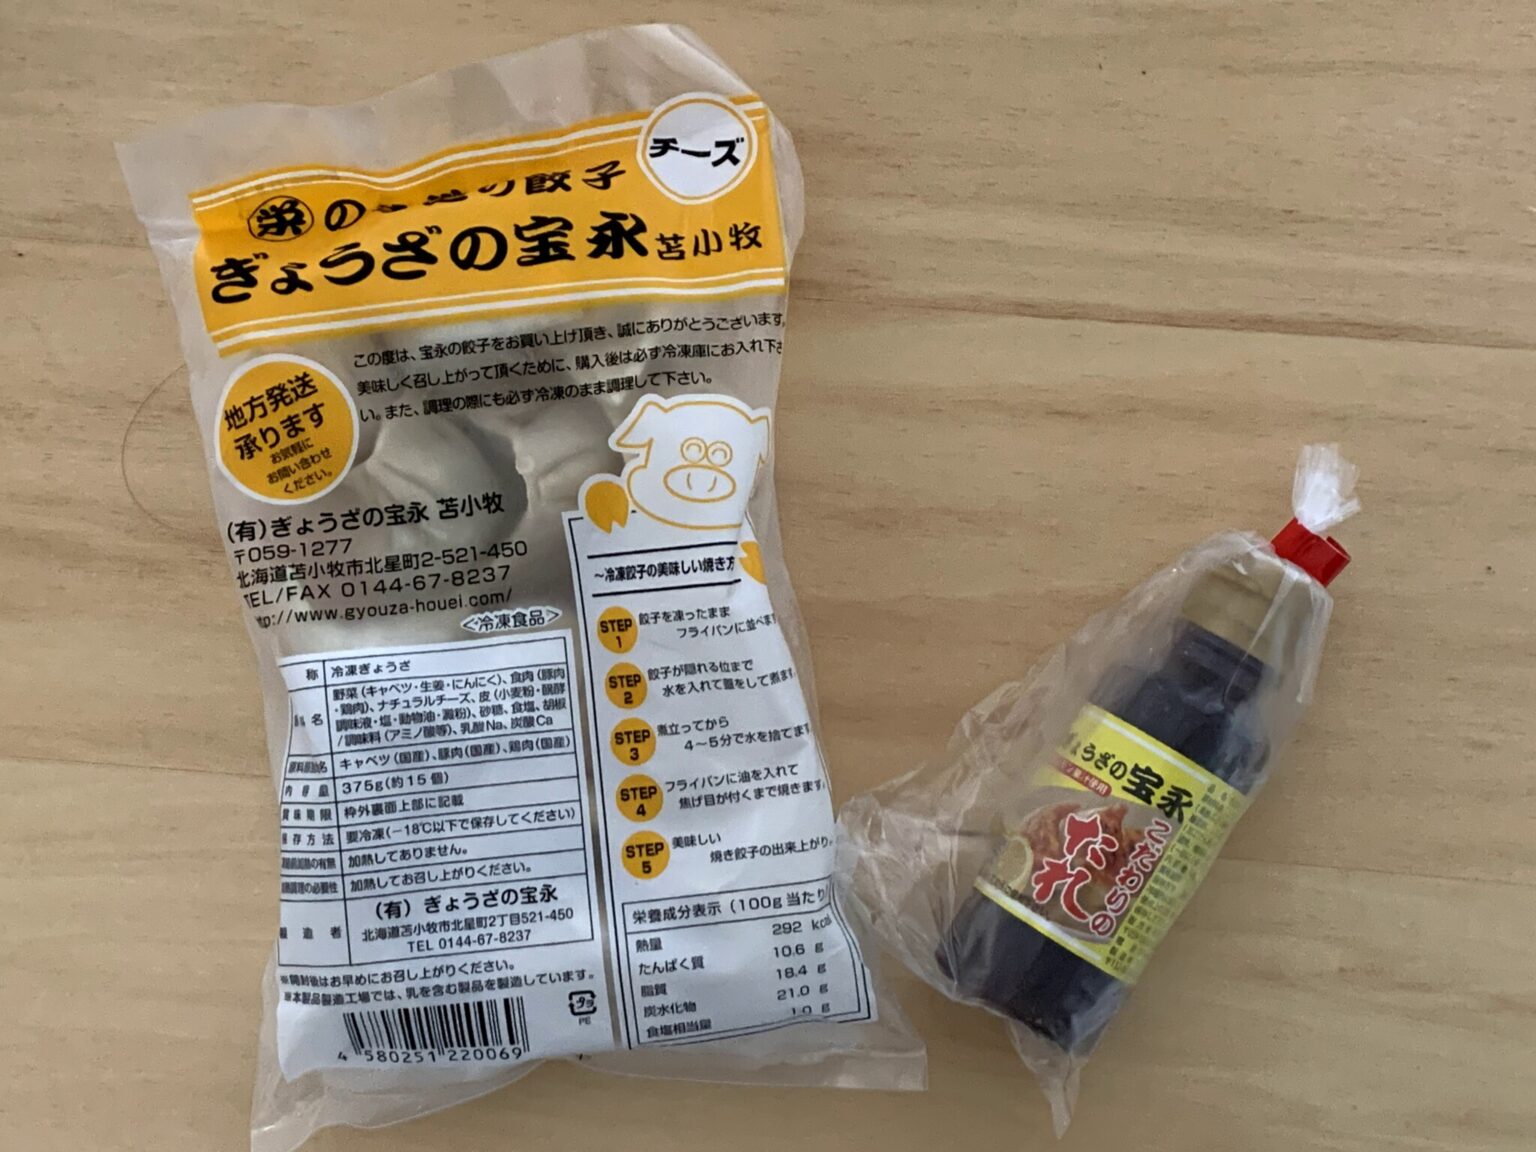 左から「宝永チーズ餃子」「宝永餃子専用こだわりのタレ」